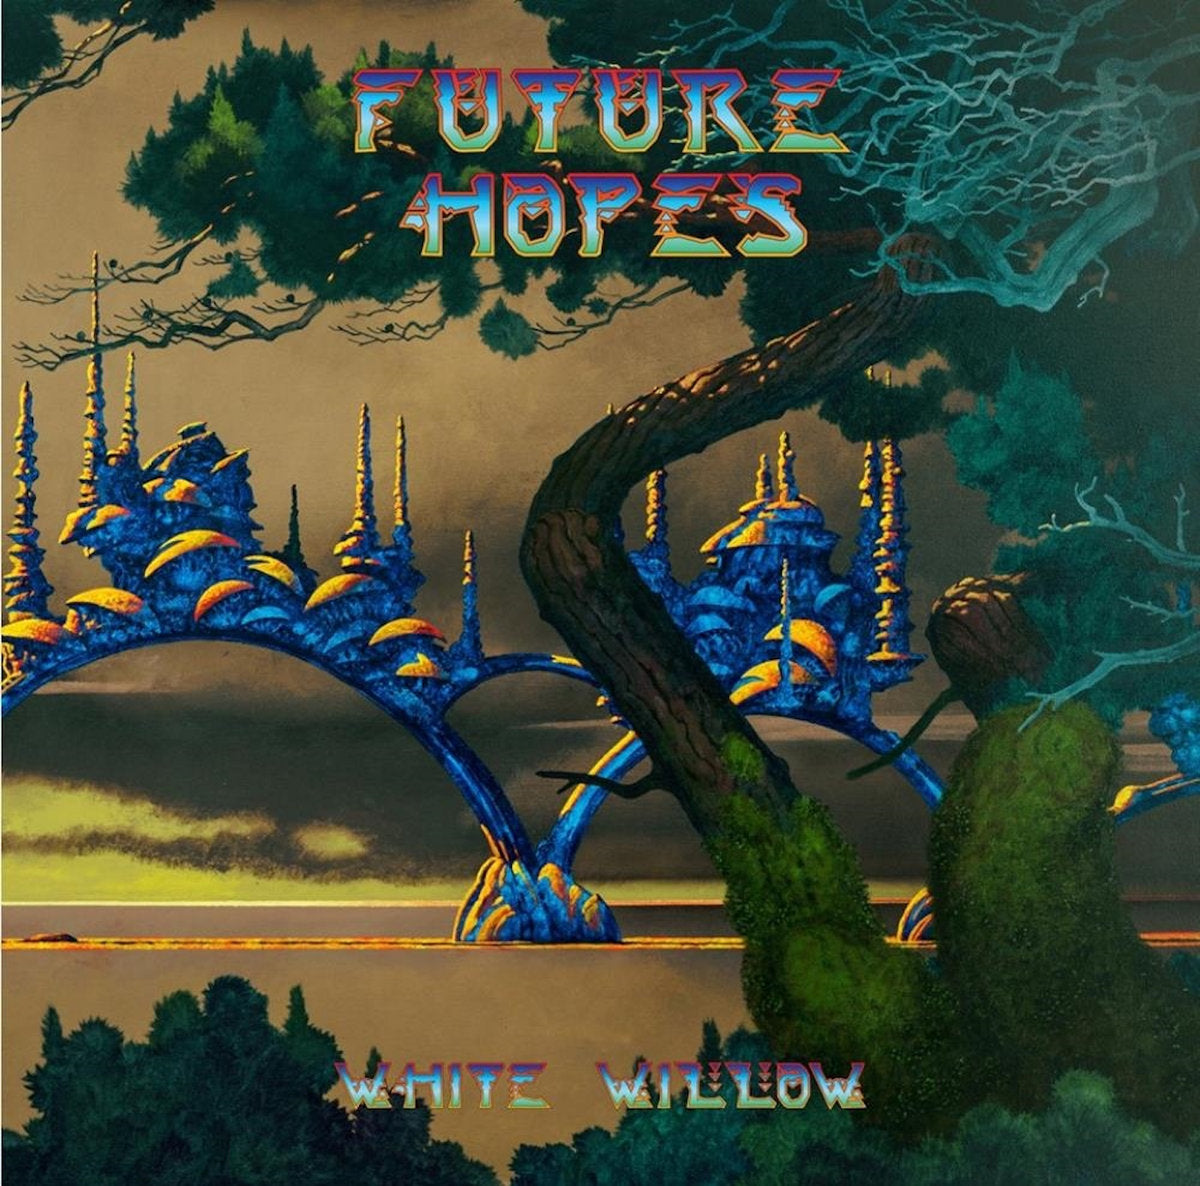 White Willow - Future Hopes (Gatefold LP)